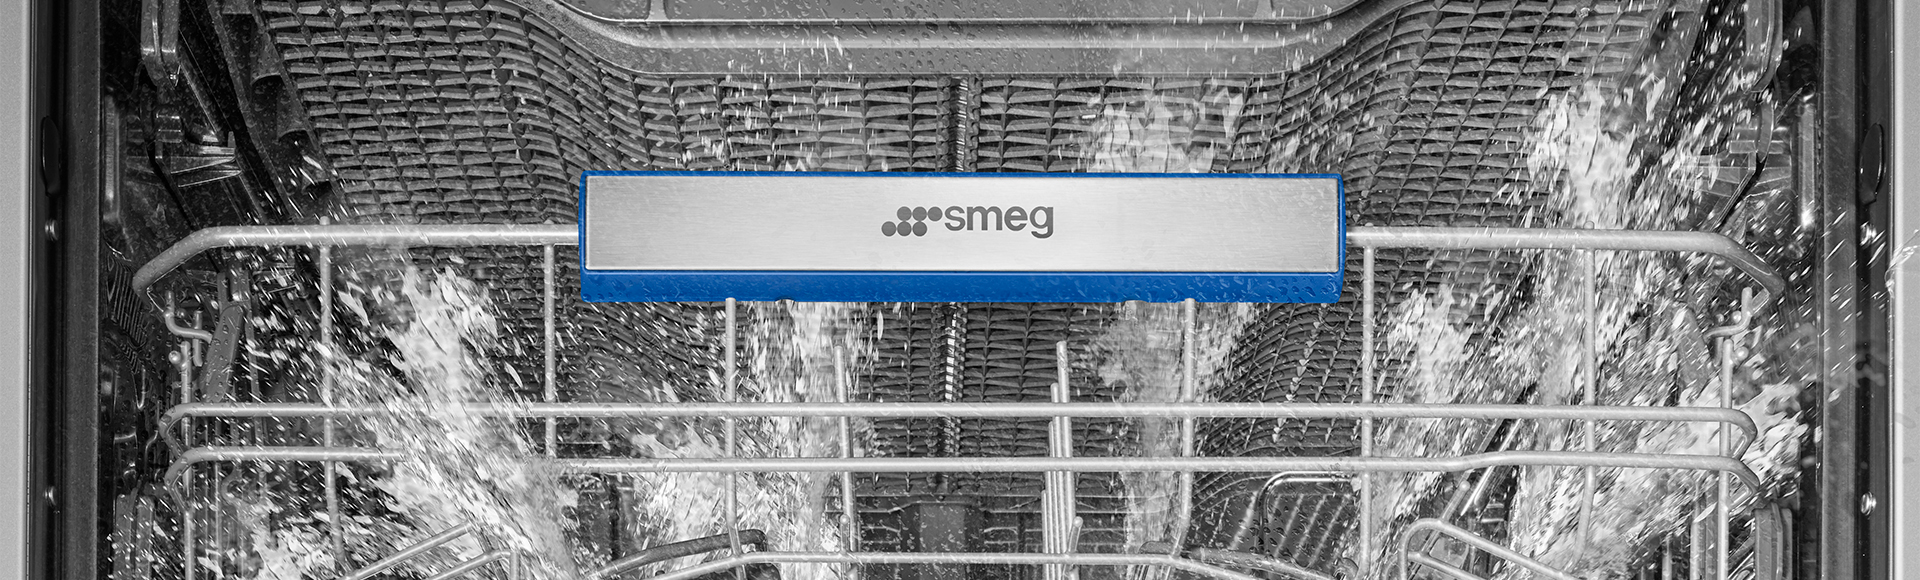 Dishwashers | Smeg.com